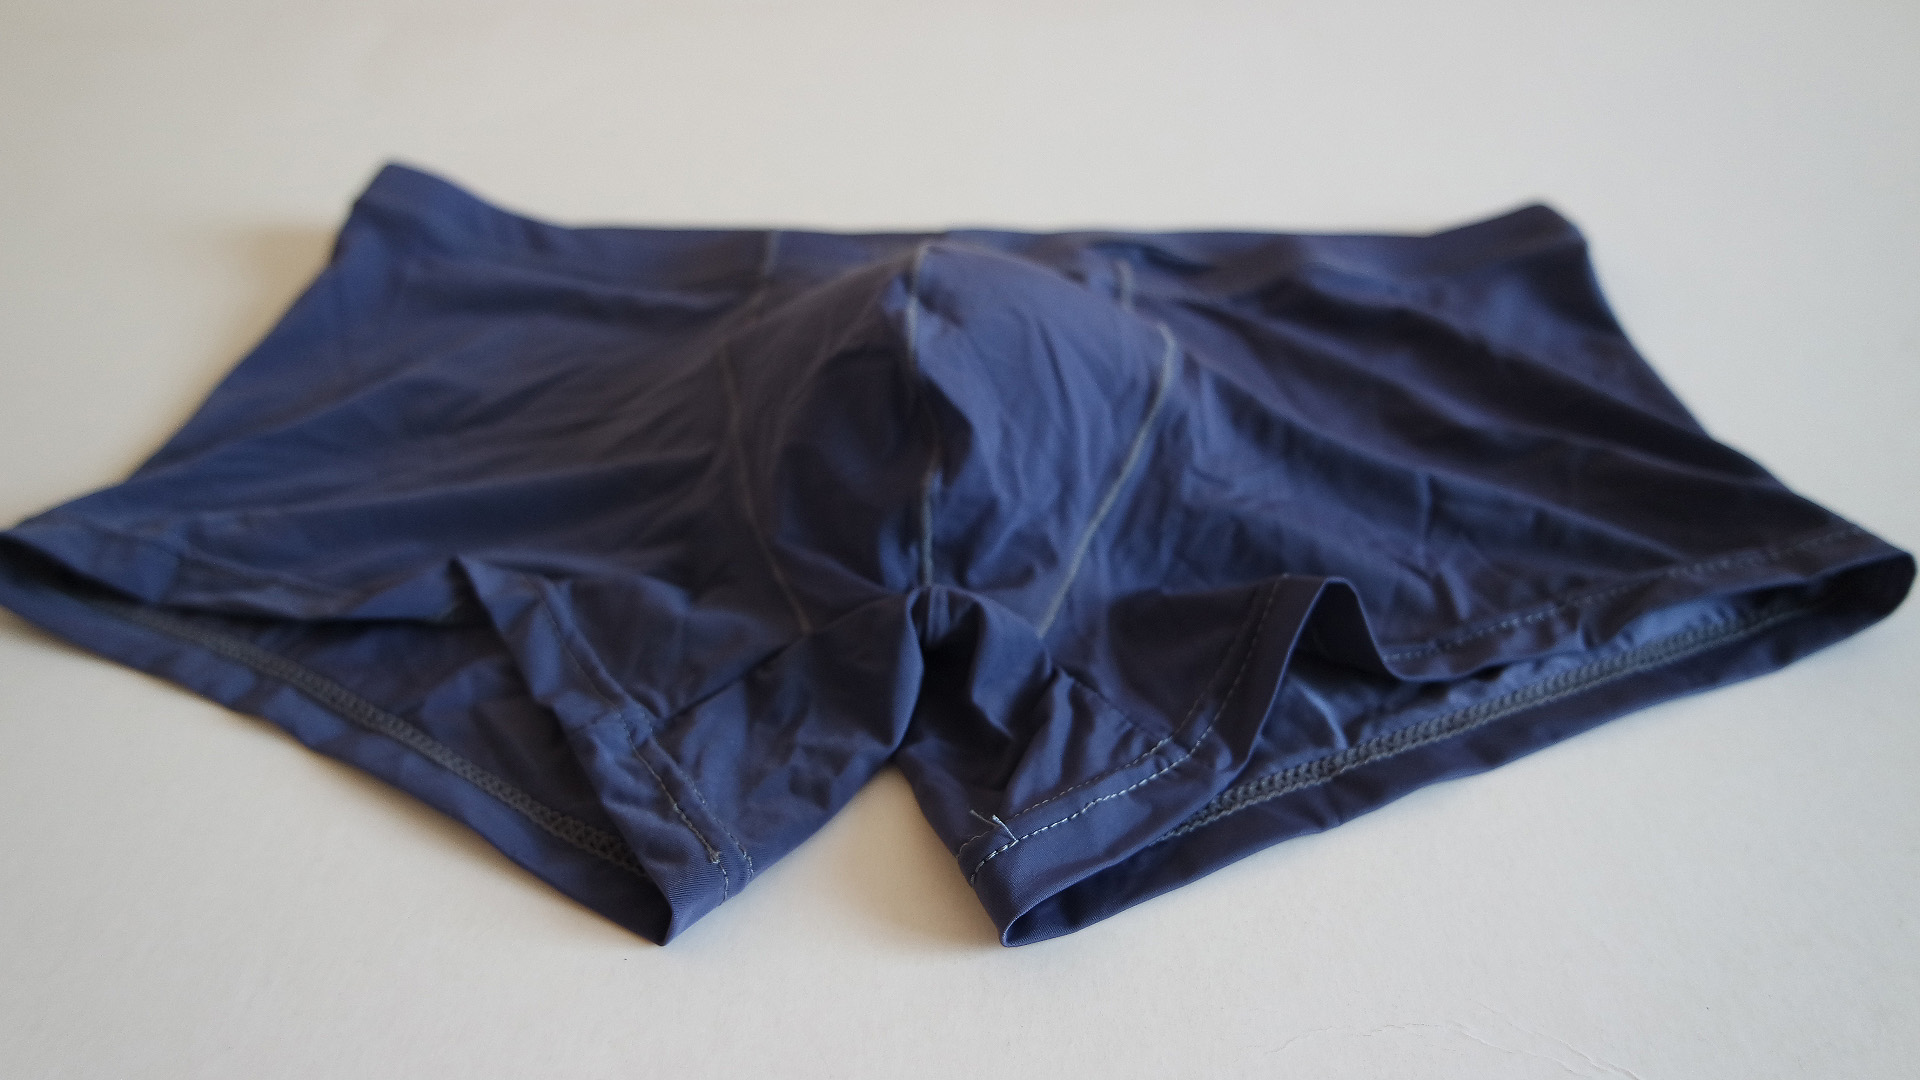 Underwearset-Underwear for sale-Offers